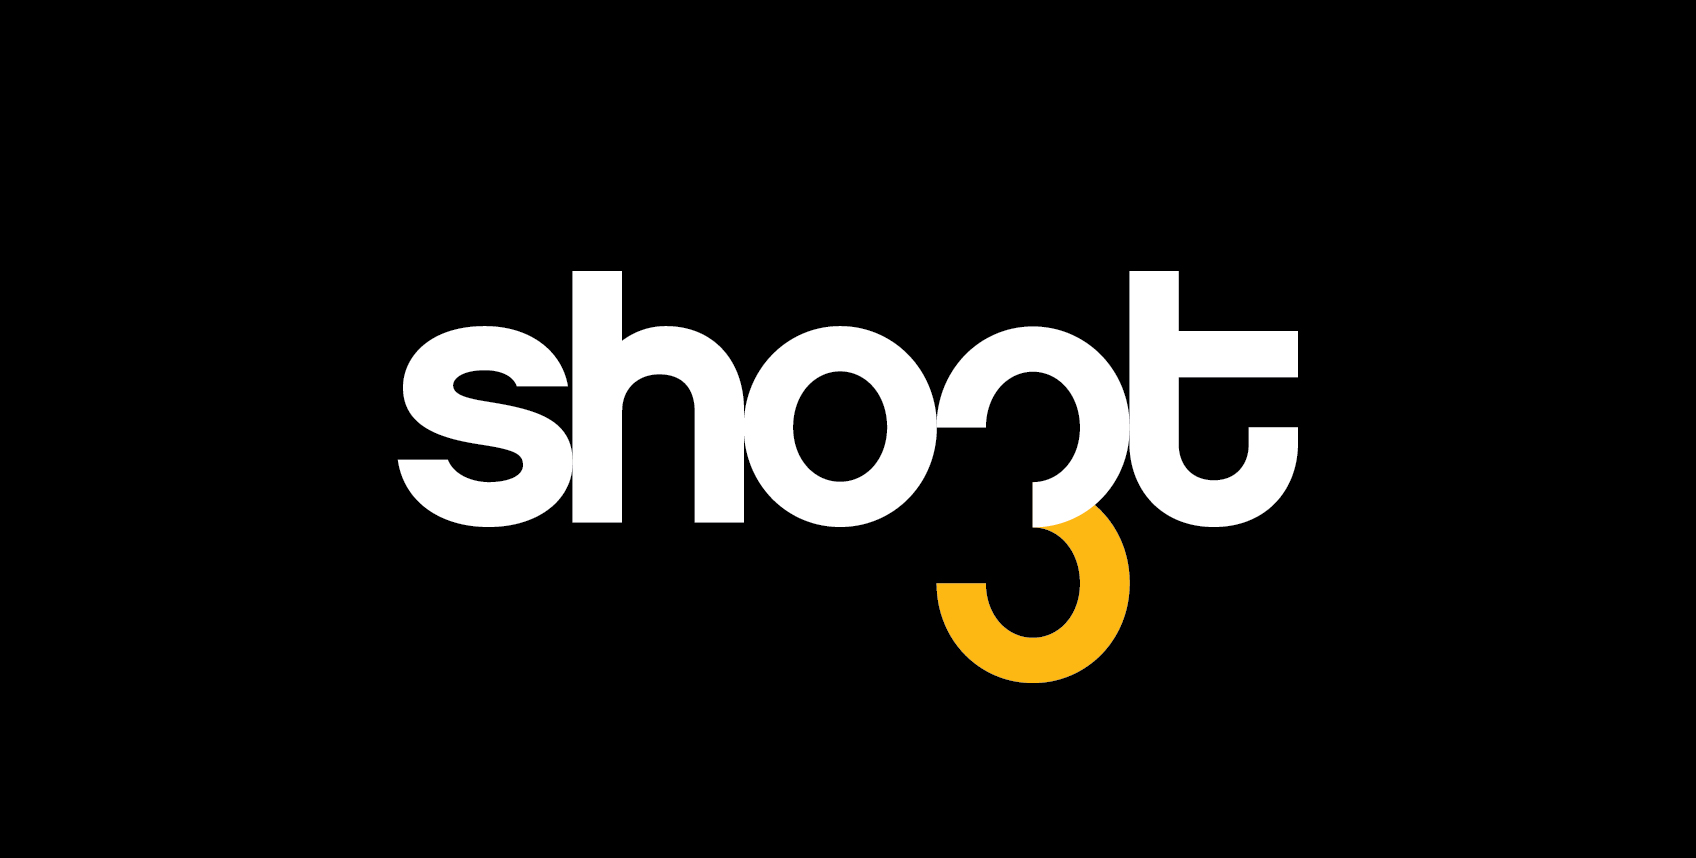 Shoot Studio